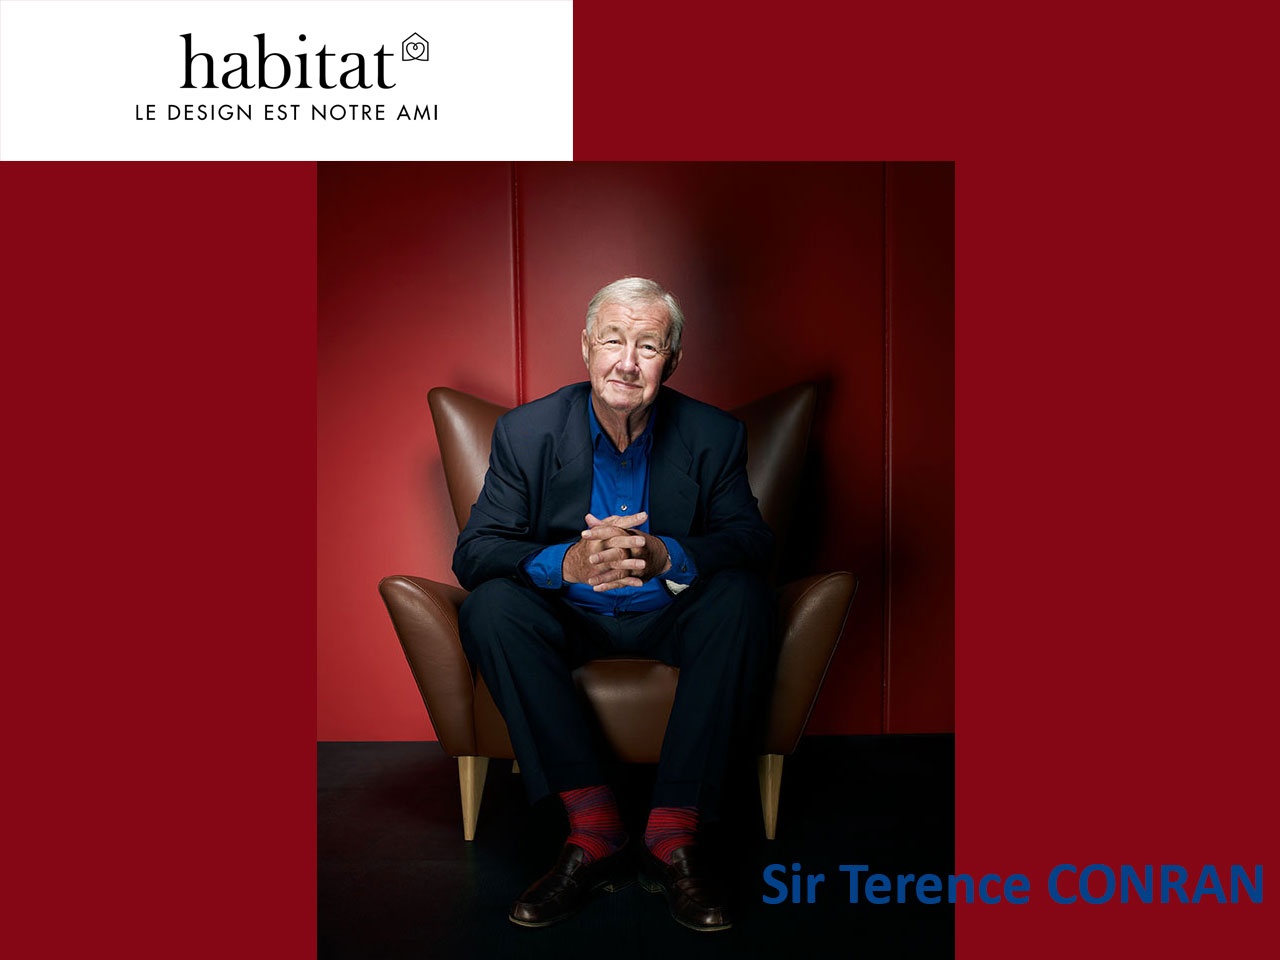 Habitat perd son fondateur, Sir Terence Conran